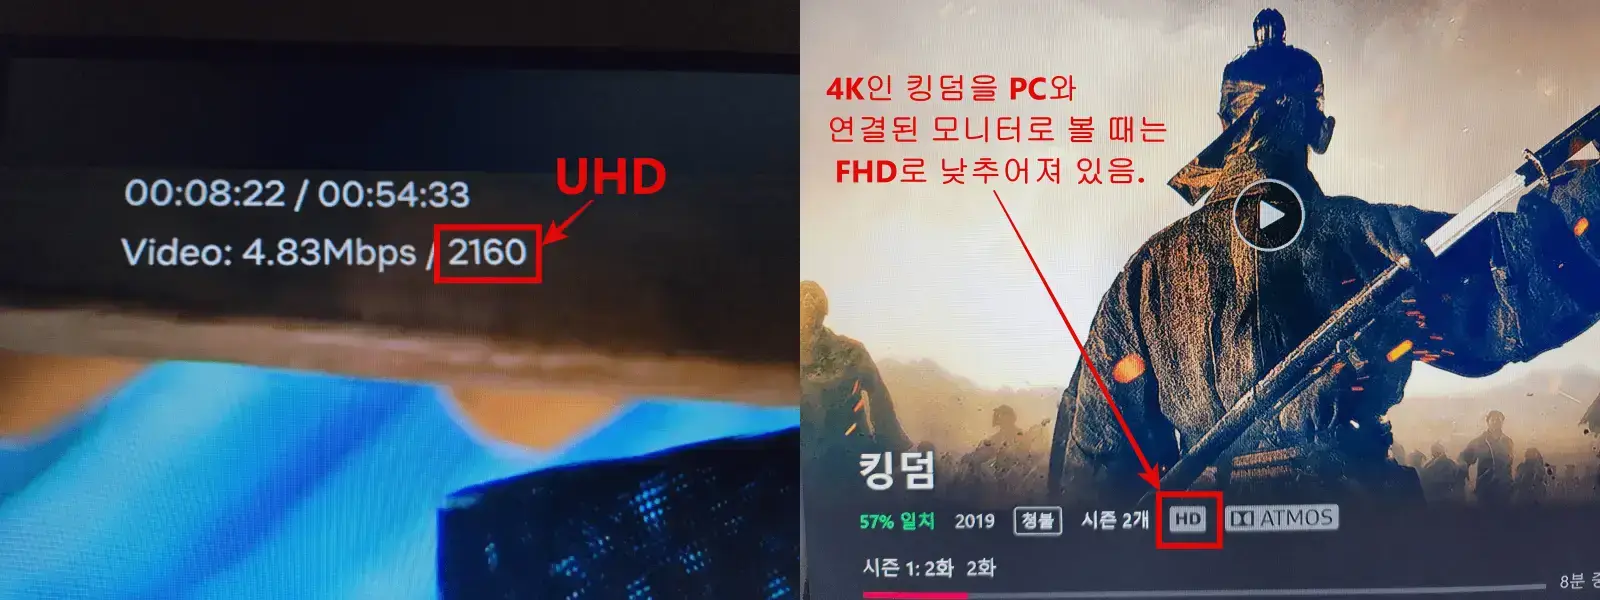 킹덤은 스마트TV로 볼 때는 4K (2160/UHD)로 볼 수 있으나 PC로 볼 때는 FHD로 화면의 질이 제한되어 있습니다.
왼쪽이 스마트TV화면이고 오른쪽이 PC화면입니다.